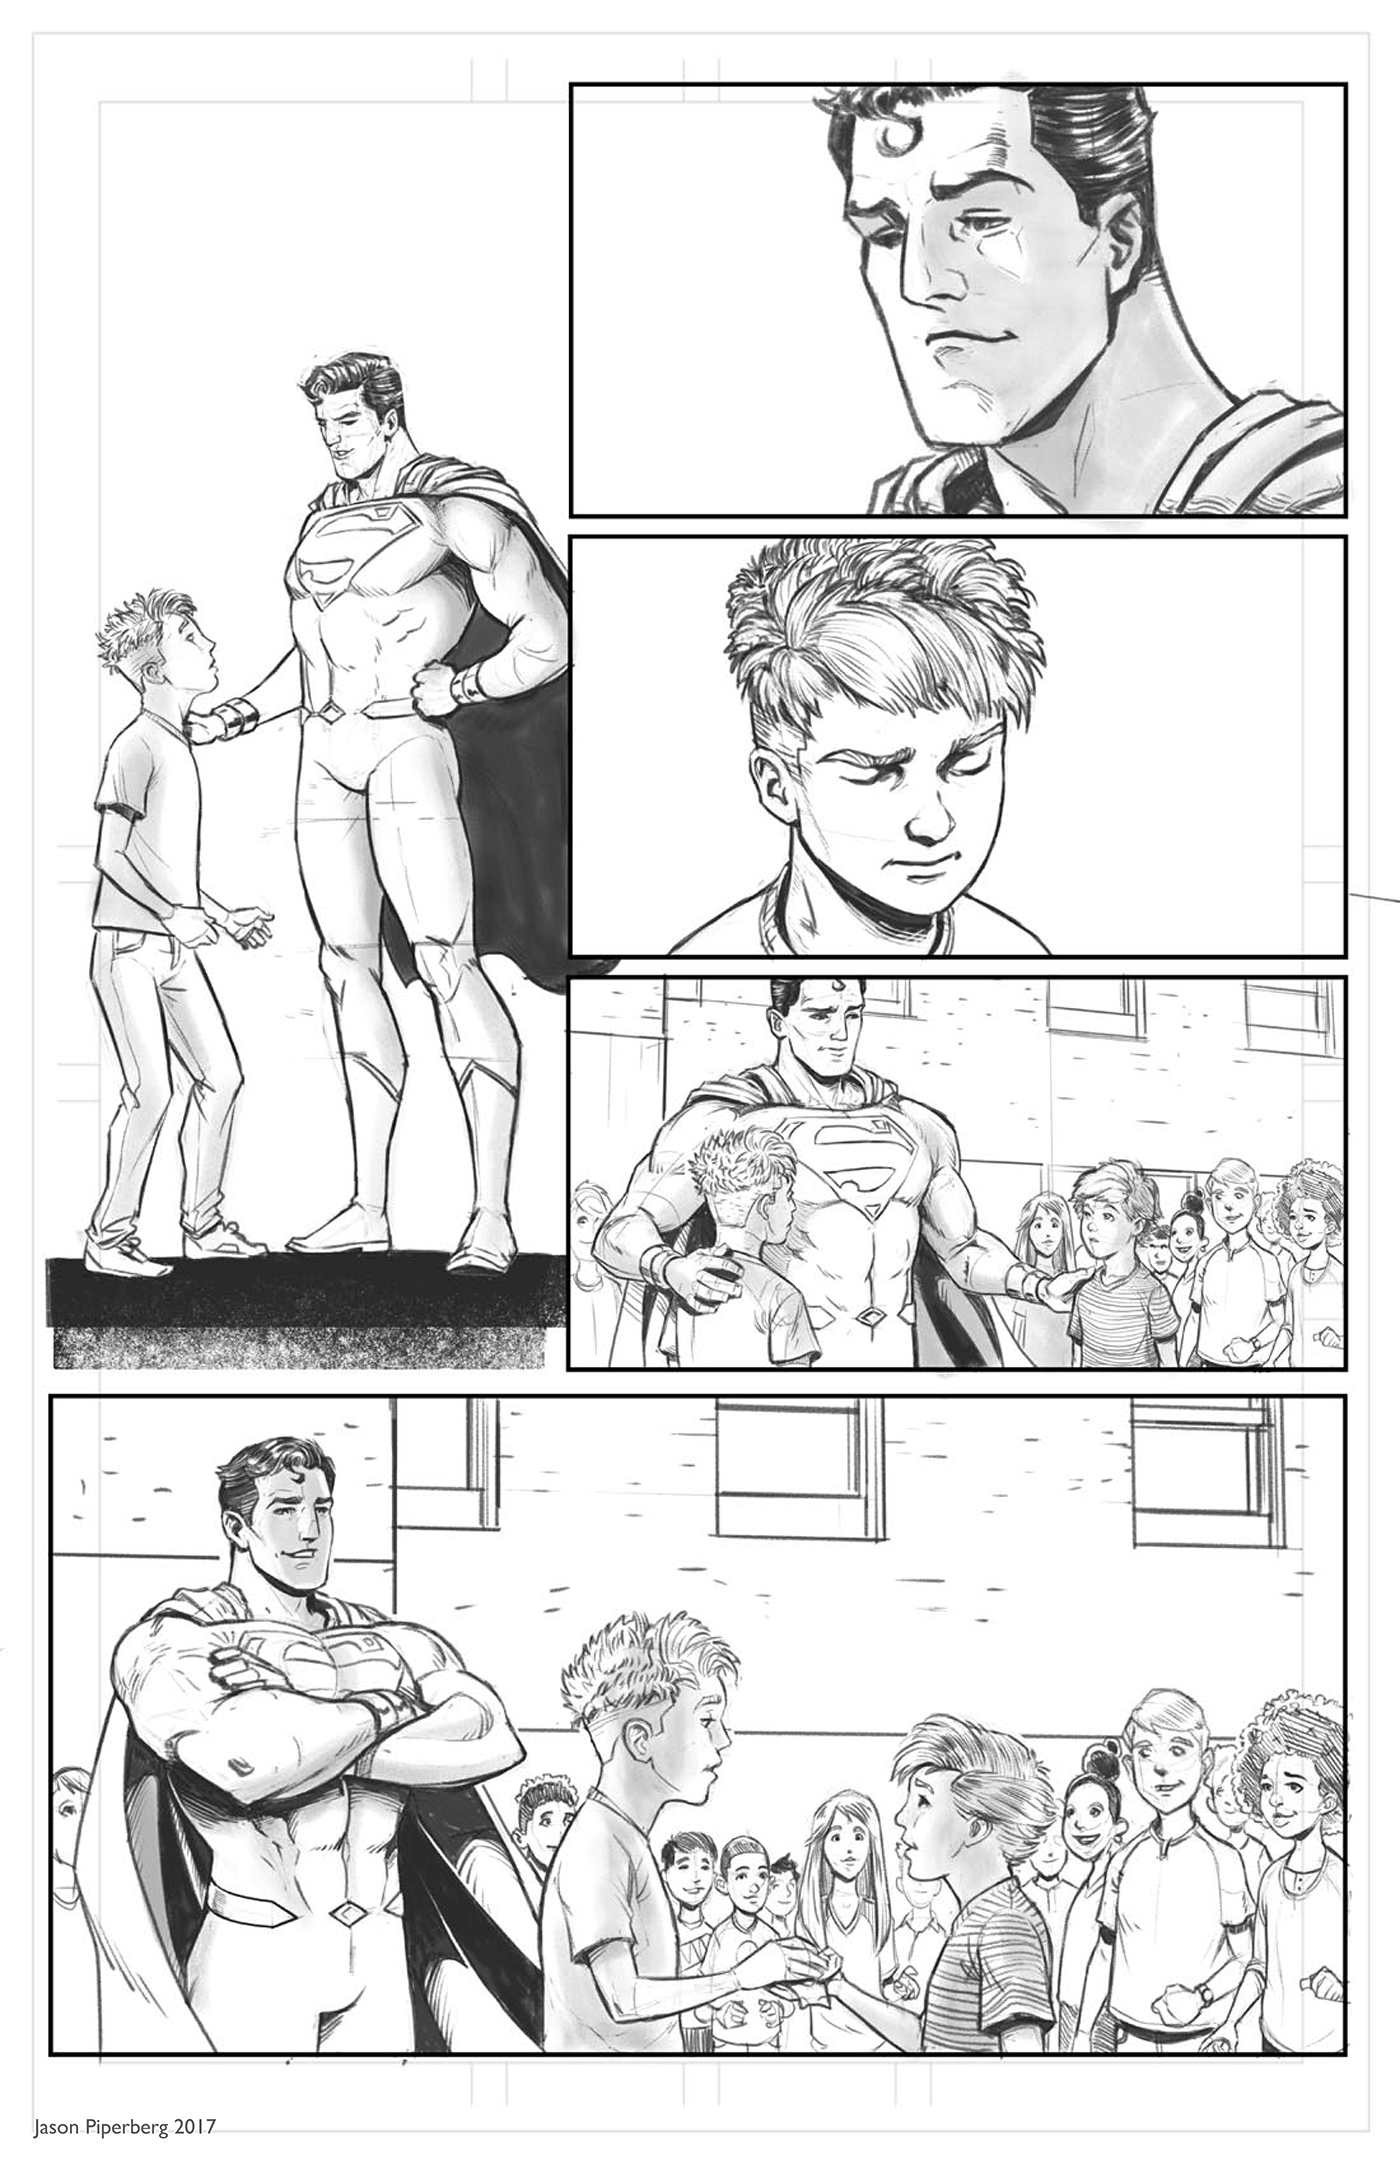 superman Dc Comics Jason Piperberg comics Sequential Art bullies ink pencil Digital Art 